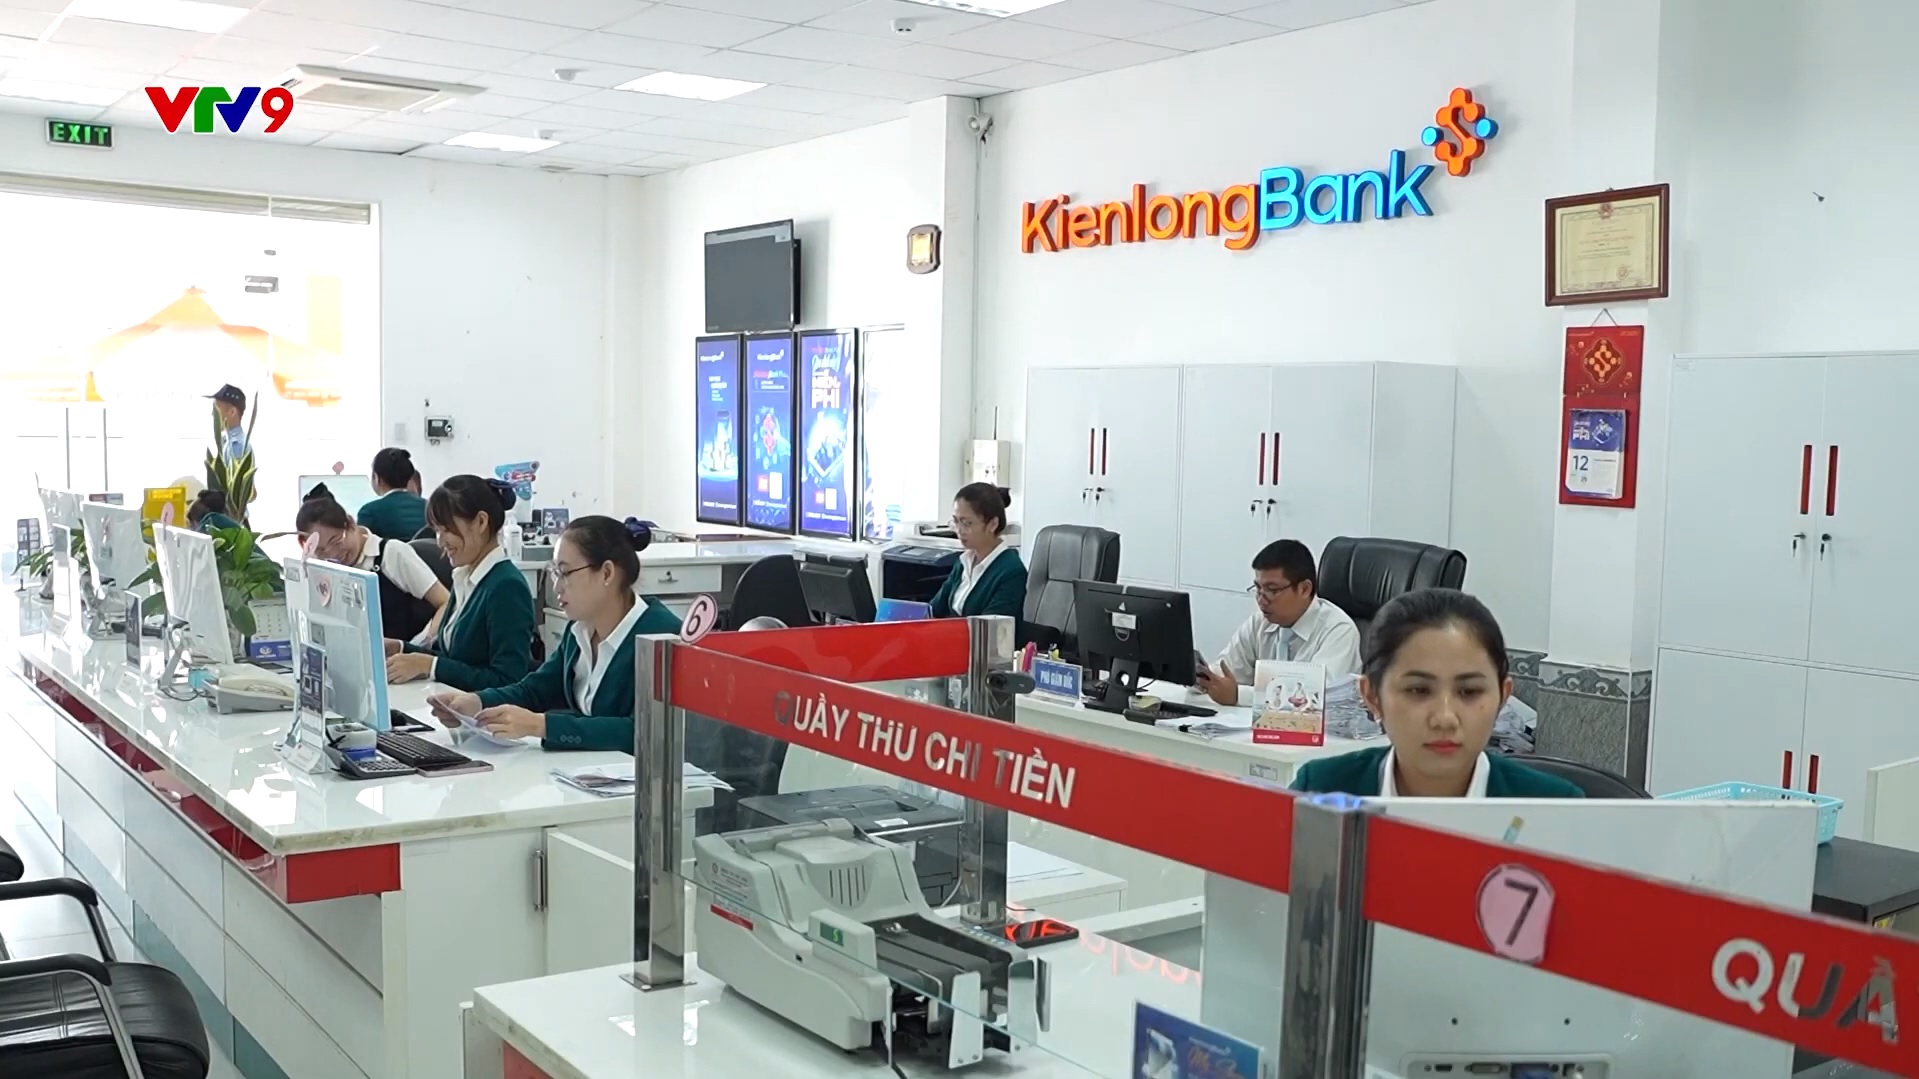 VTV9: KienlongBank tích cực hỗ trợ nguồn vốn cho hoạt động sản xuất và chế biến nông sản xuất khẩu